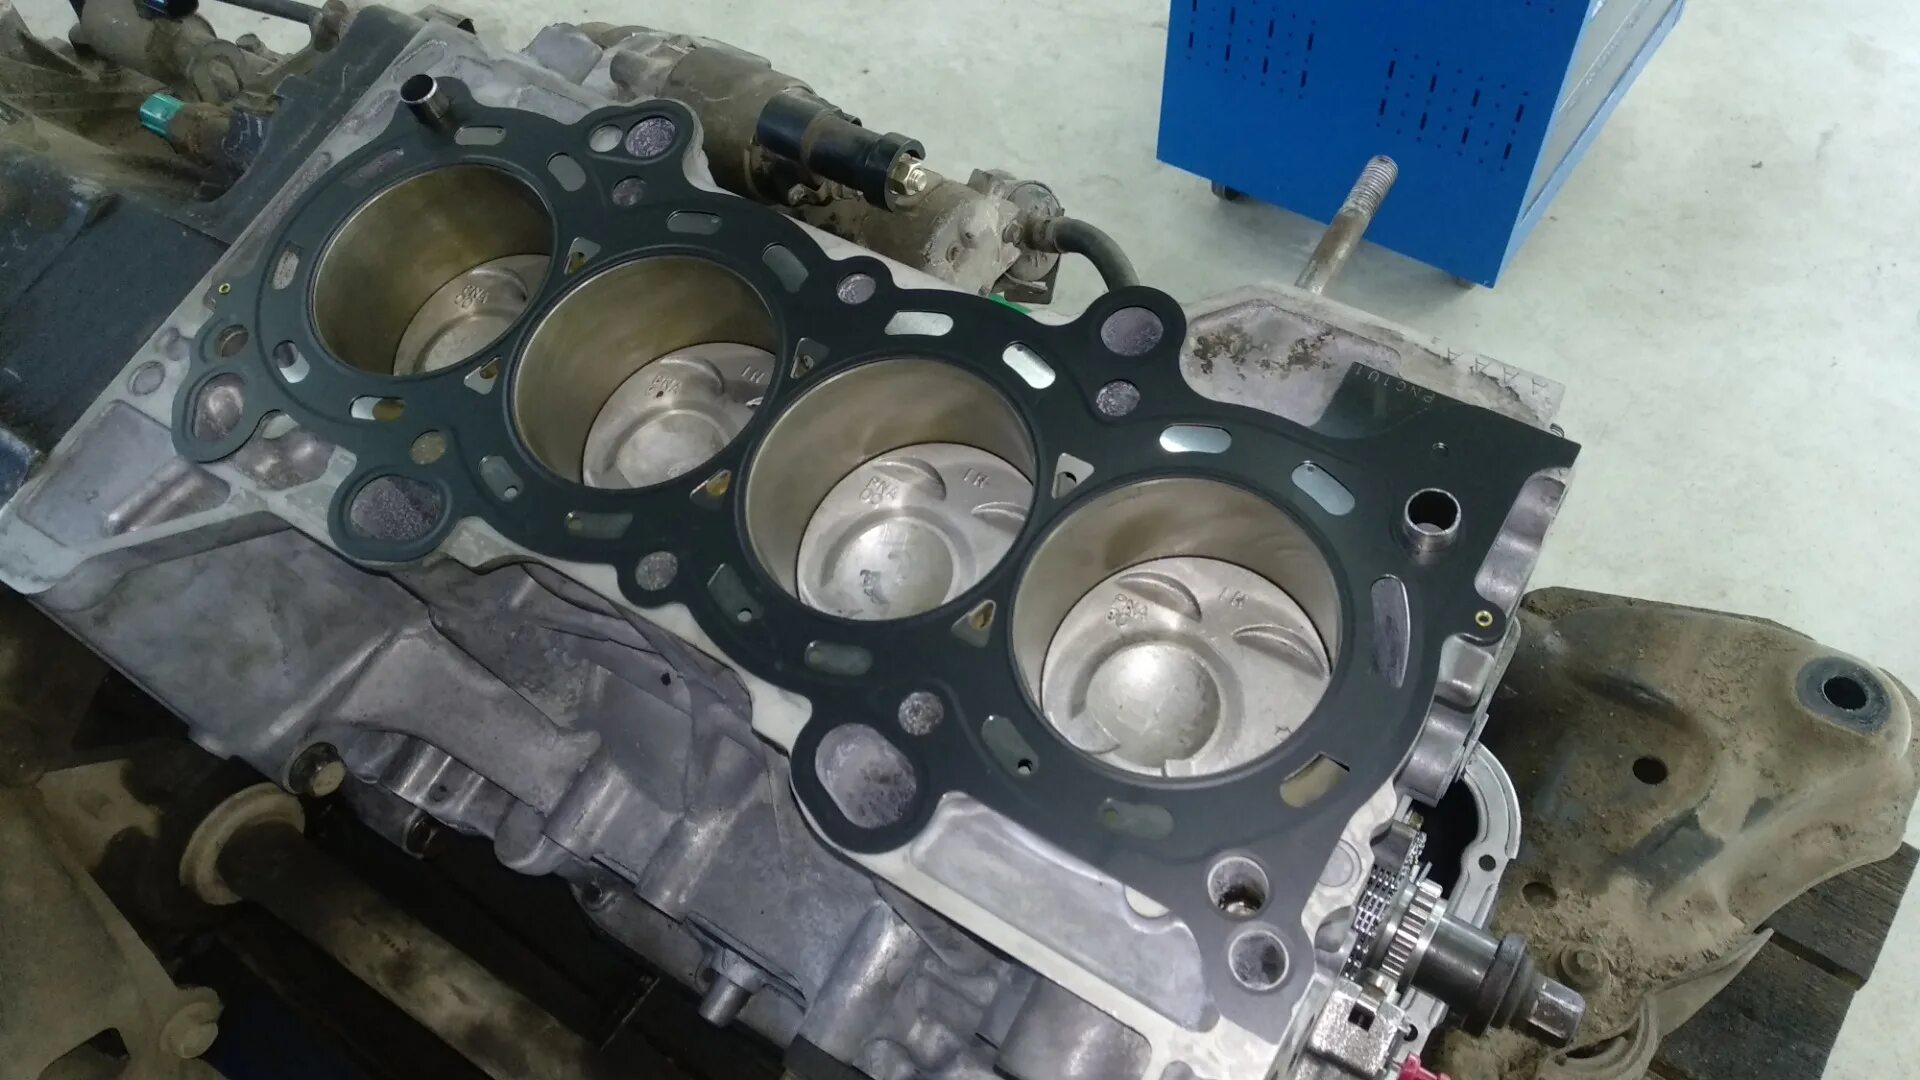 Капремонт двигателя Хонда Одиссей 2.3. Капитальный ремонт двигателя. Капитальный ремонт двигателя Фиат Дукато 2,8. Двигатель Хонда 5п.с 160сс с нижним распредвалом ремонт двигателя.